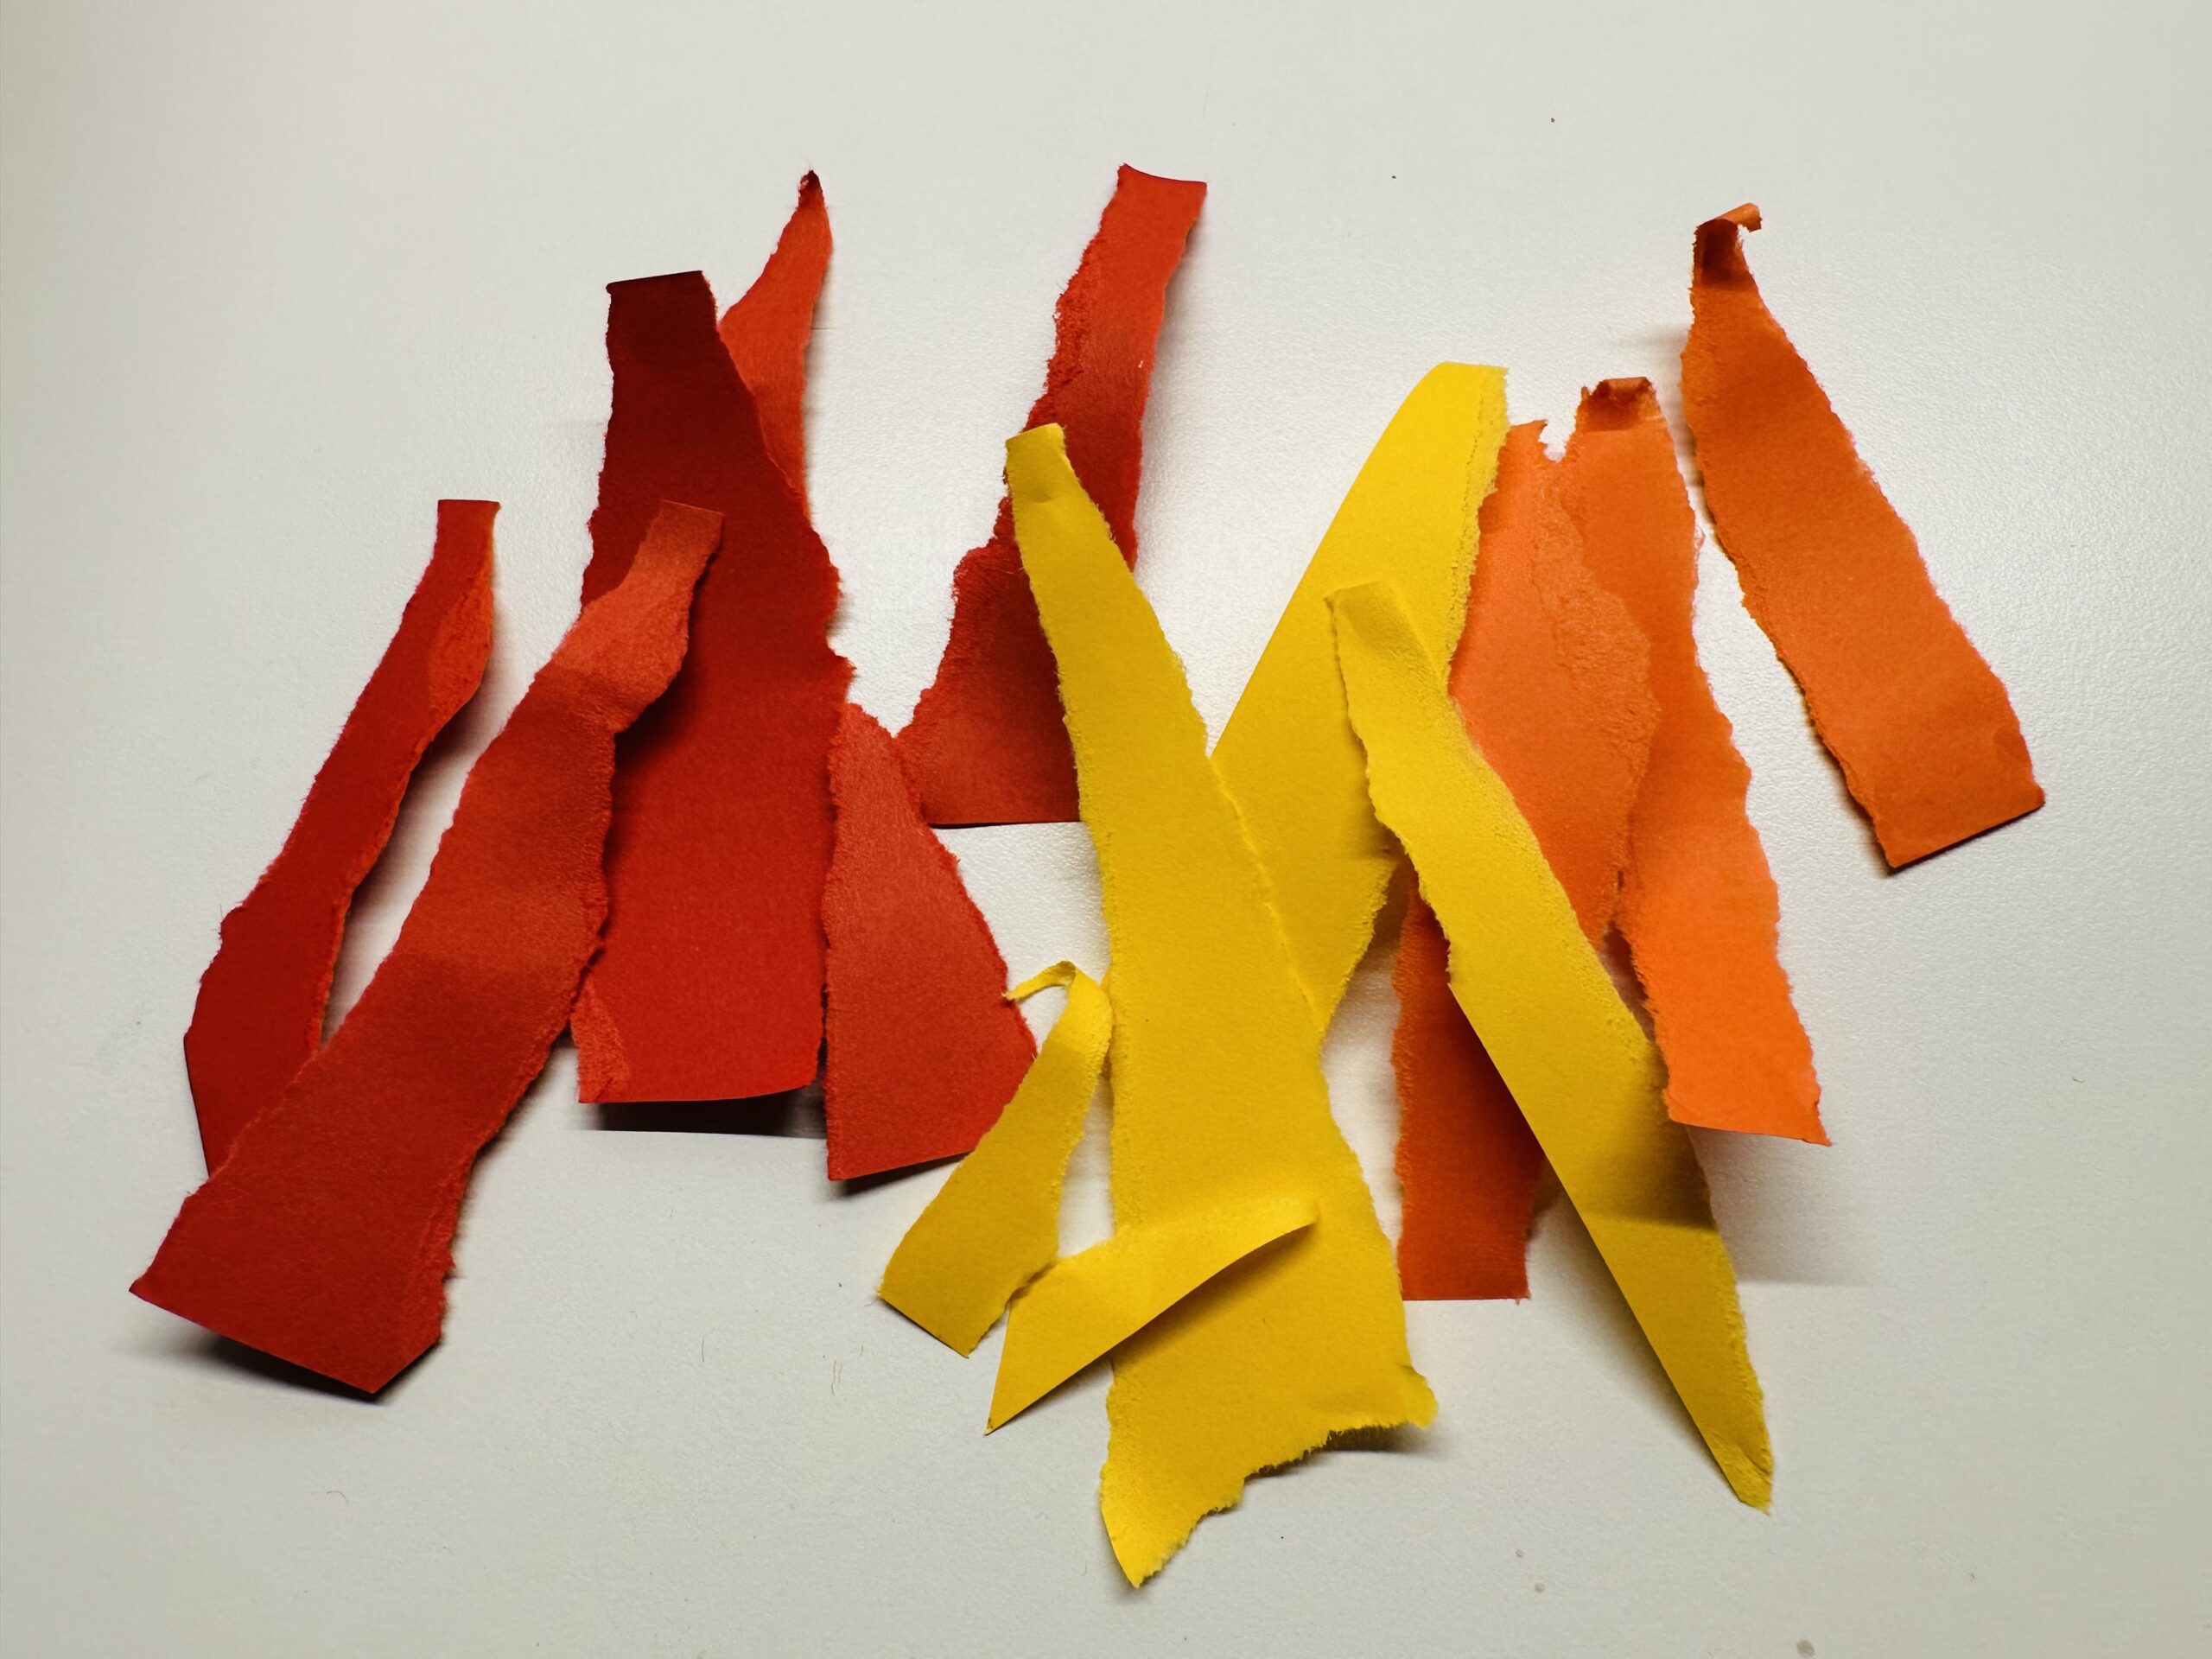 Bild zum Schritt 4 für das Bastel- und DIY-Abenteuer für Kinder: 'Das sind die Streifen, die ihr für die Flammen braucht.'